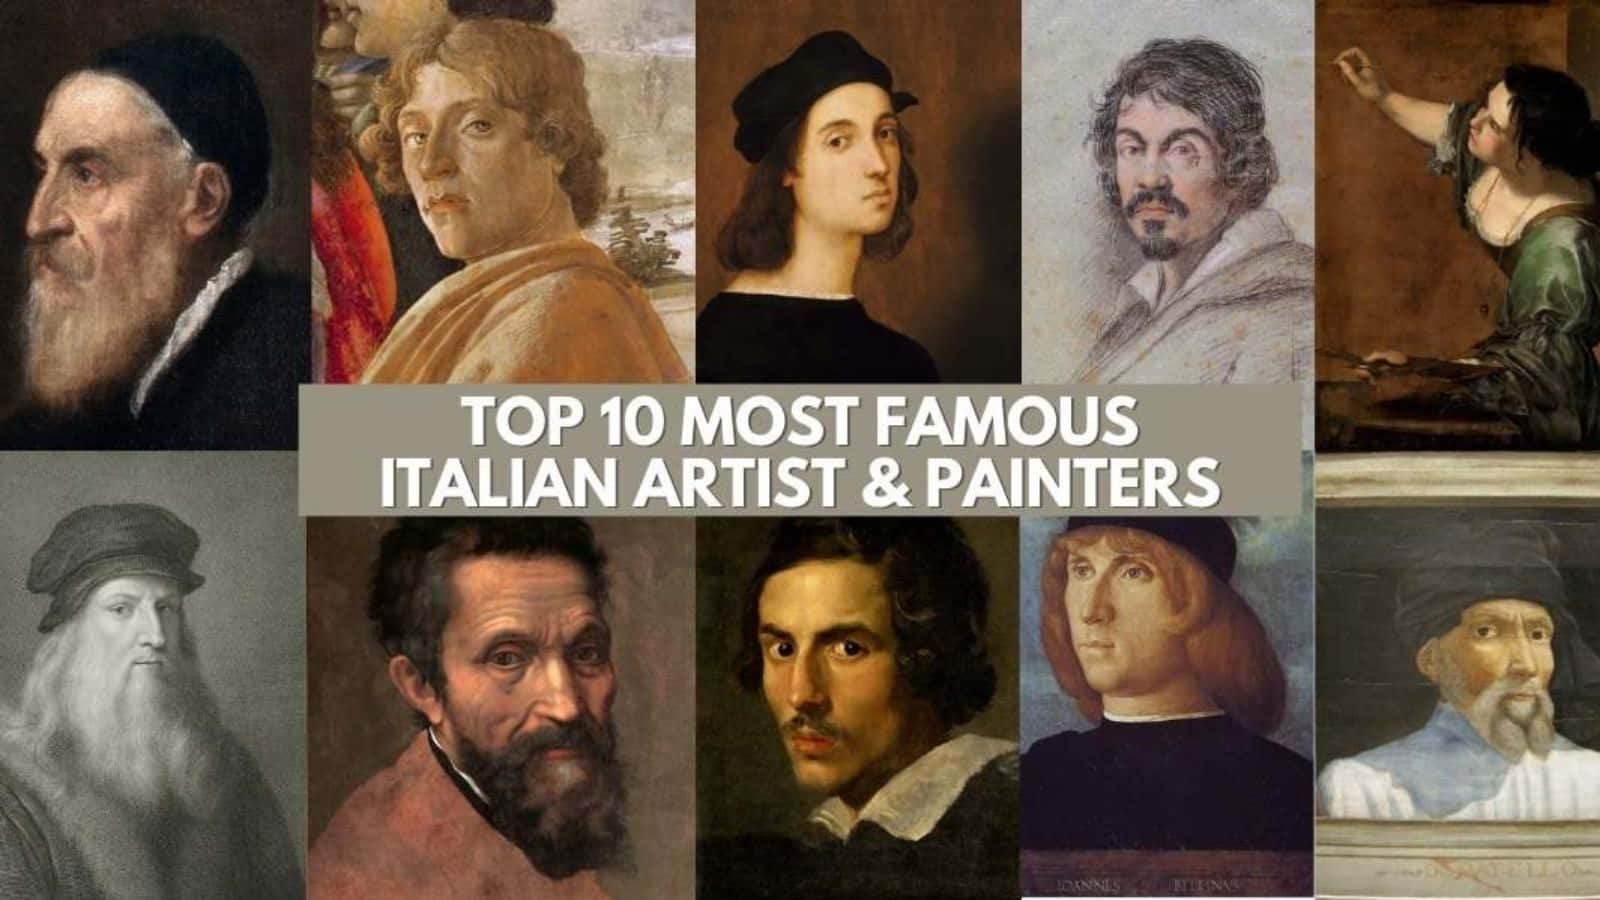 Top10 De Los Artistas Y Pintores Italianos Más Famosos